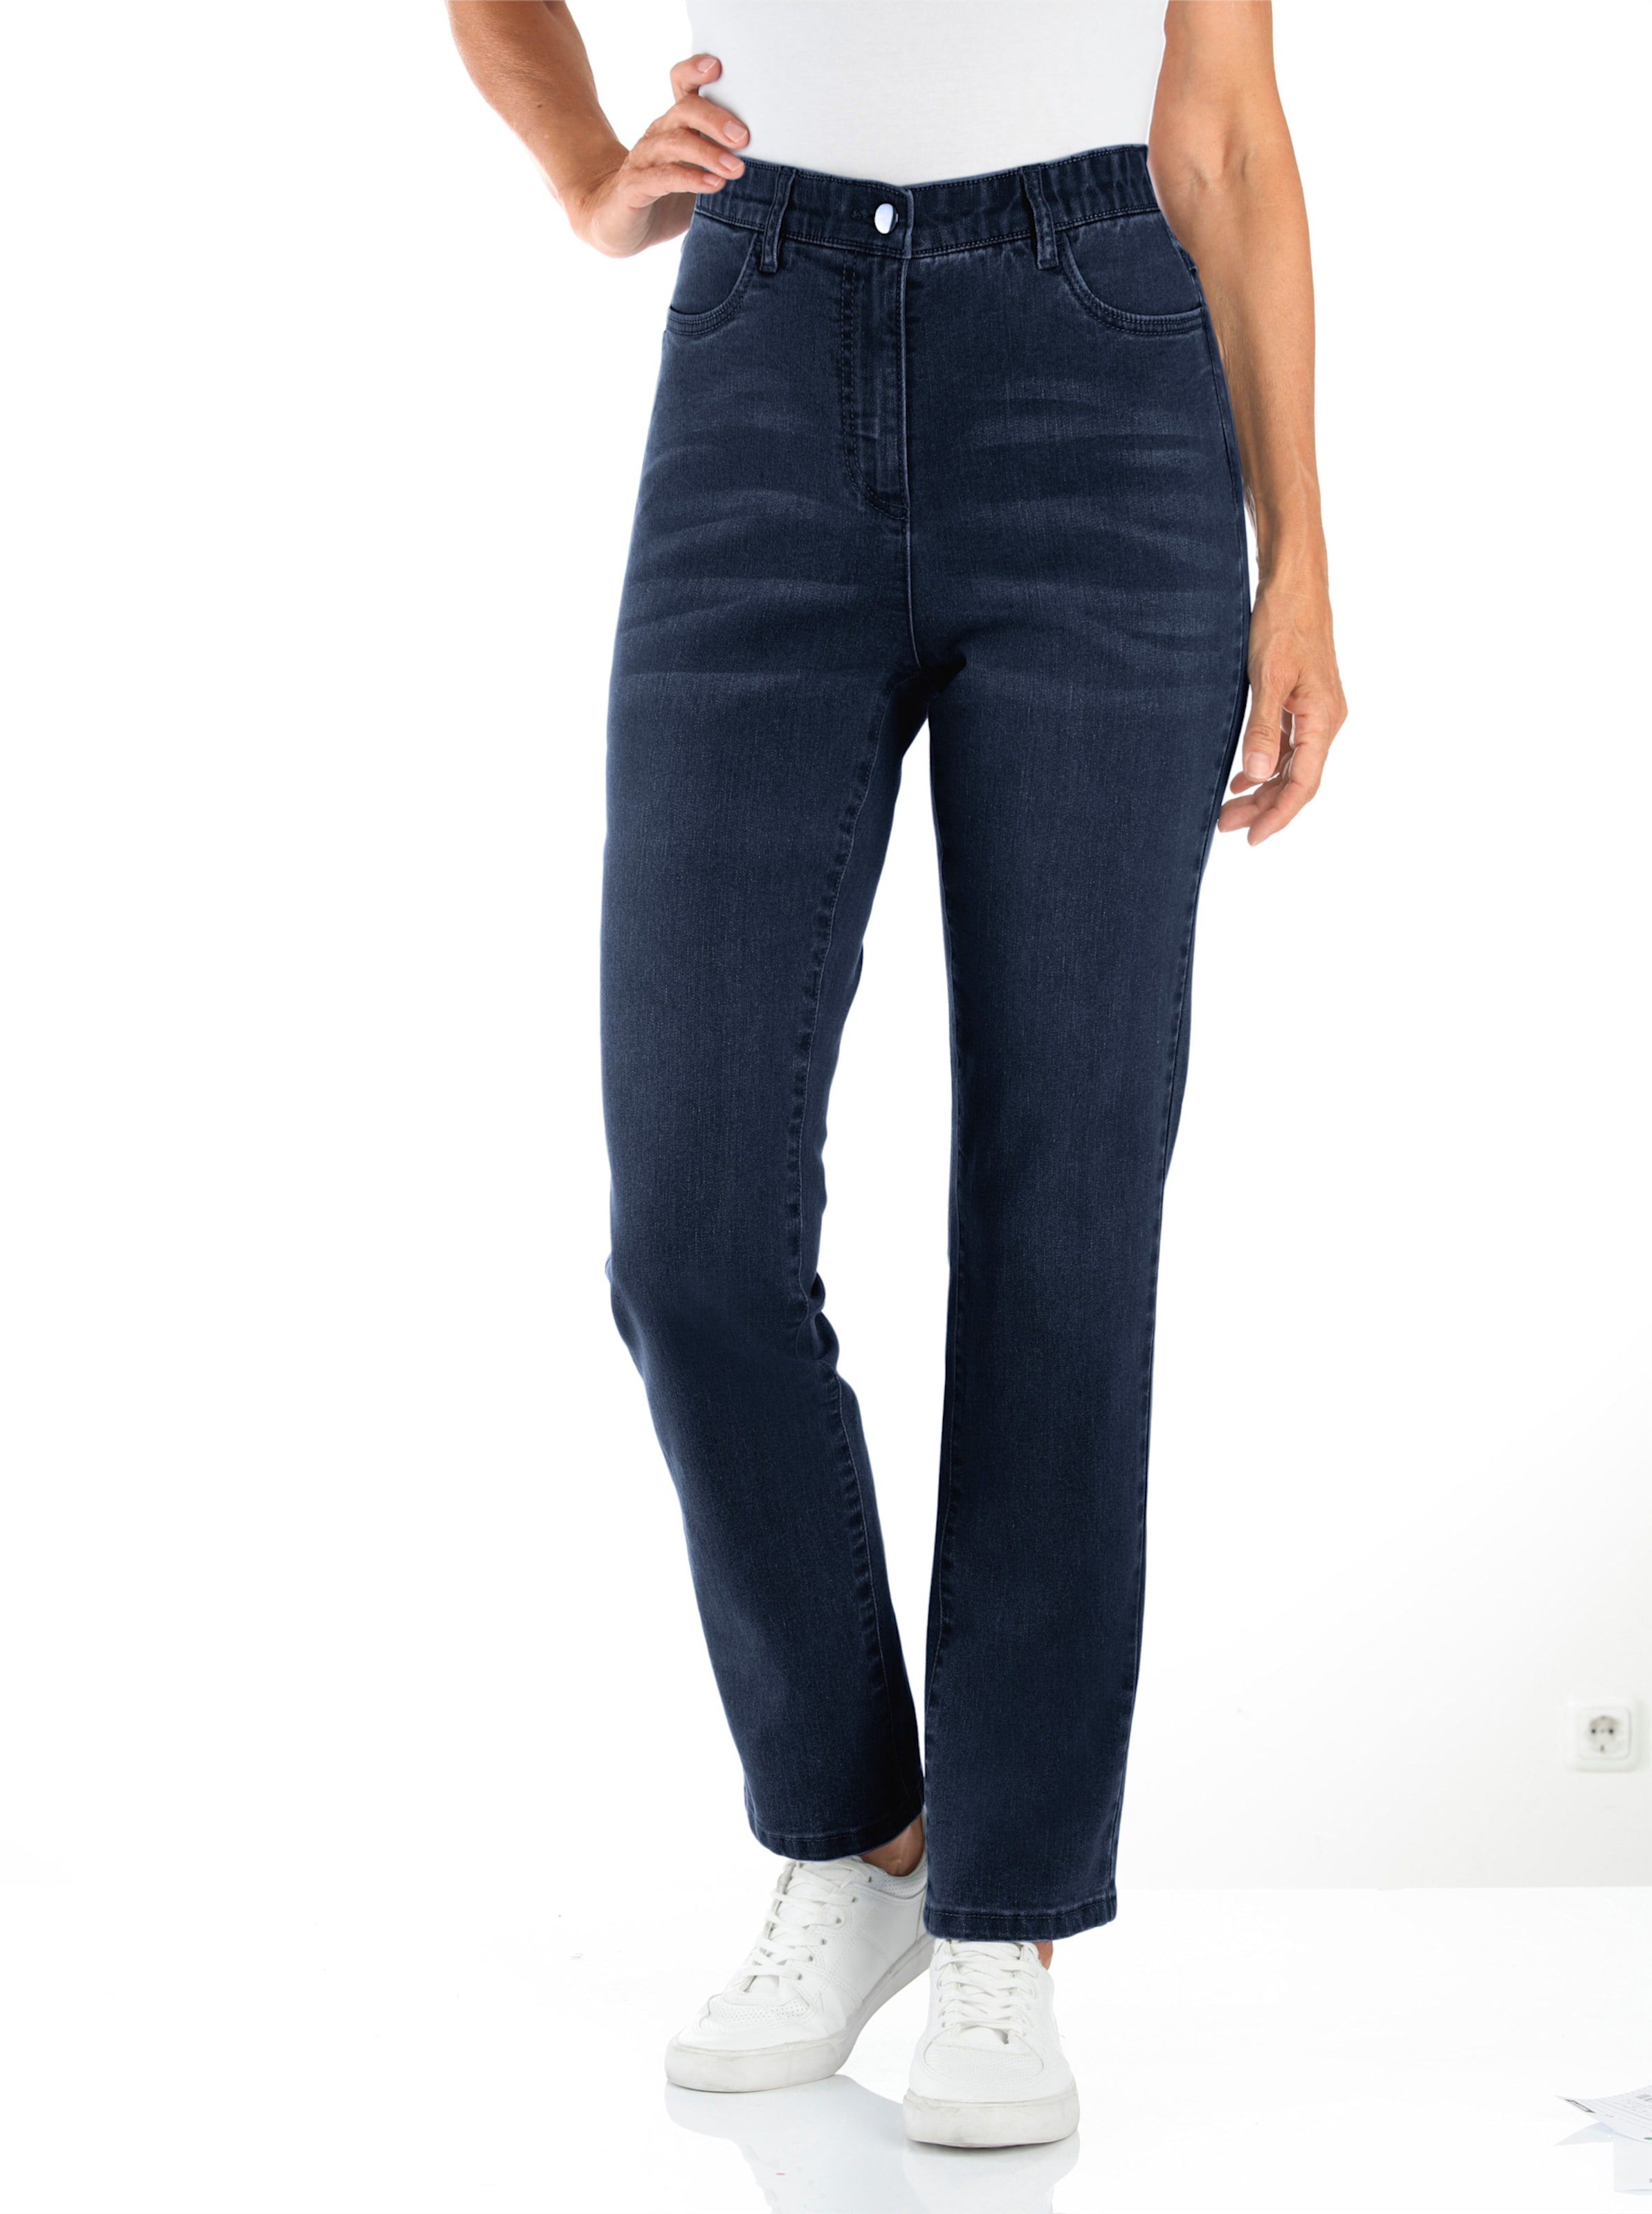 Witt Damen High-waist-Jeans, dark blue